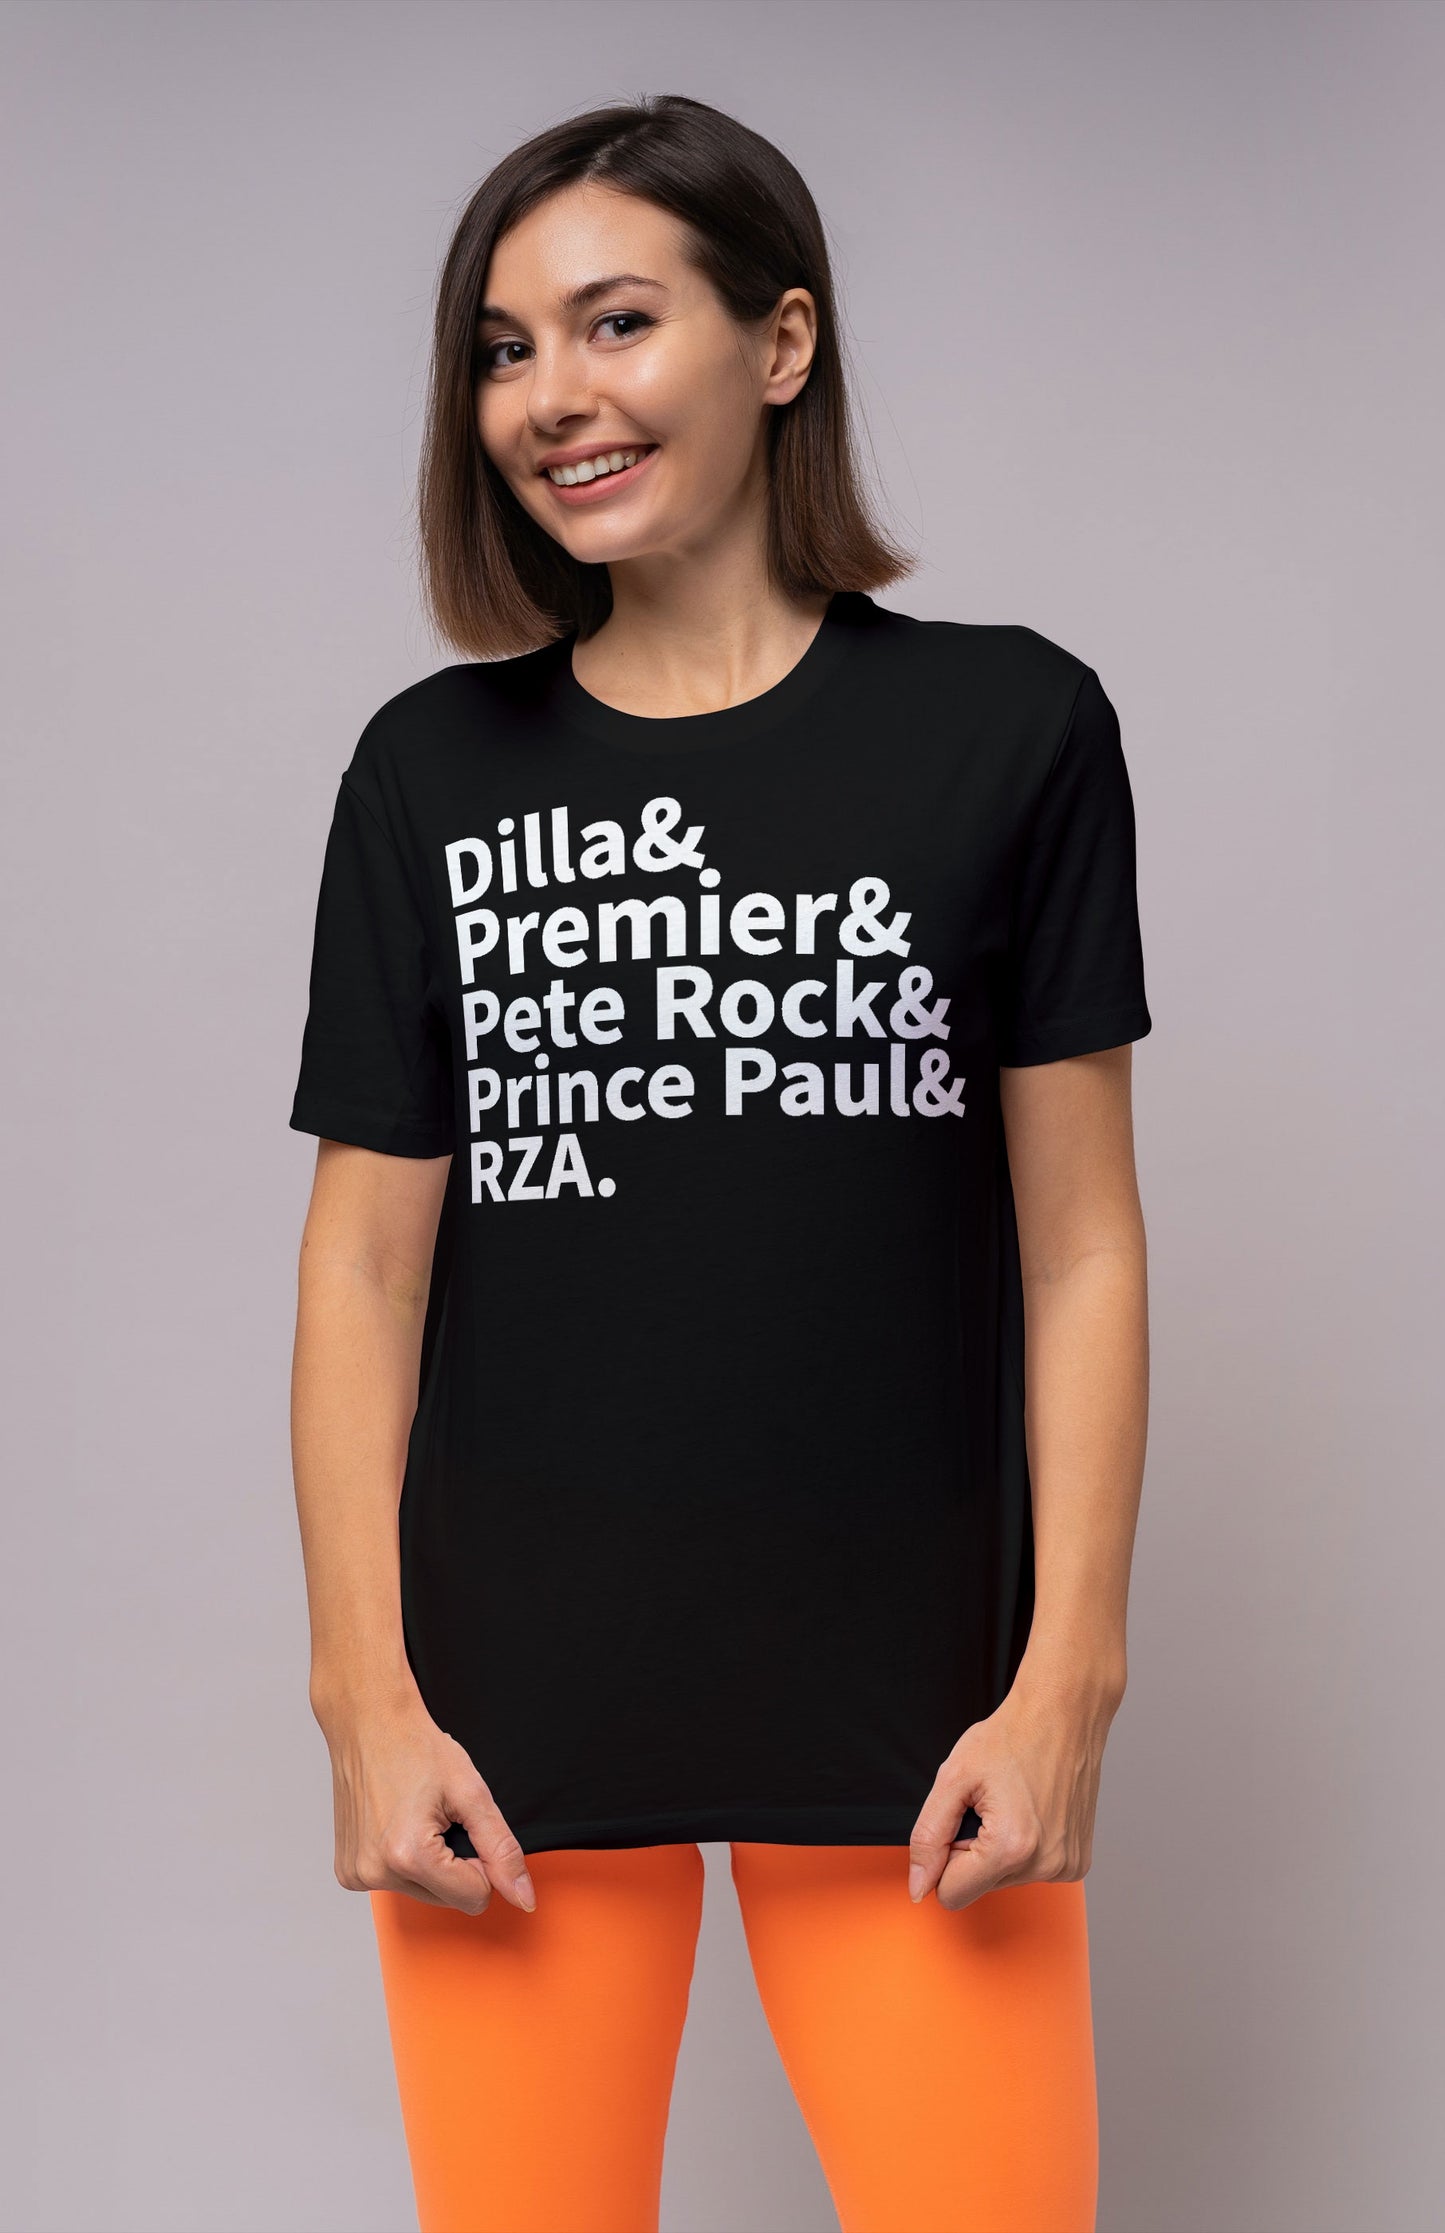 Dilla & Premier & Pete Rock & Prince Paul & RZA Shirt